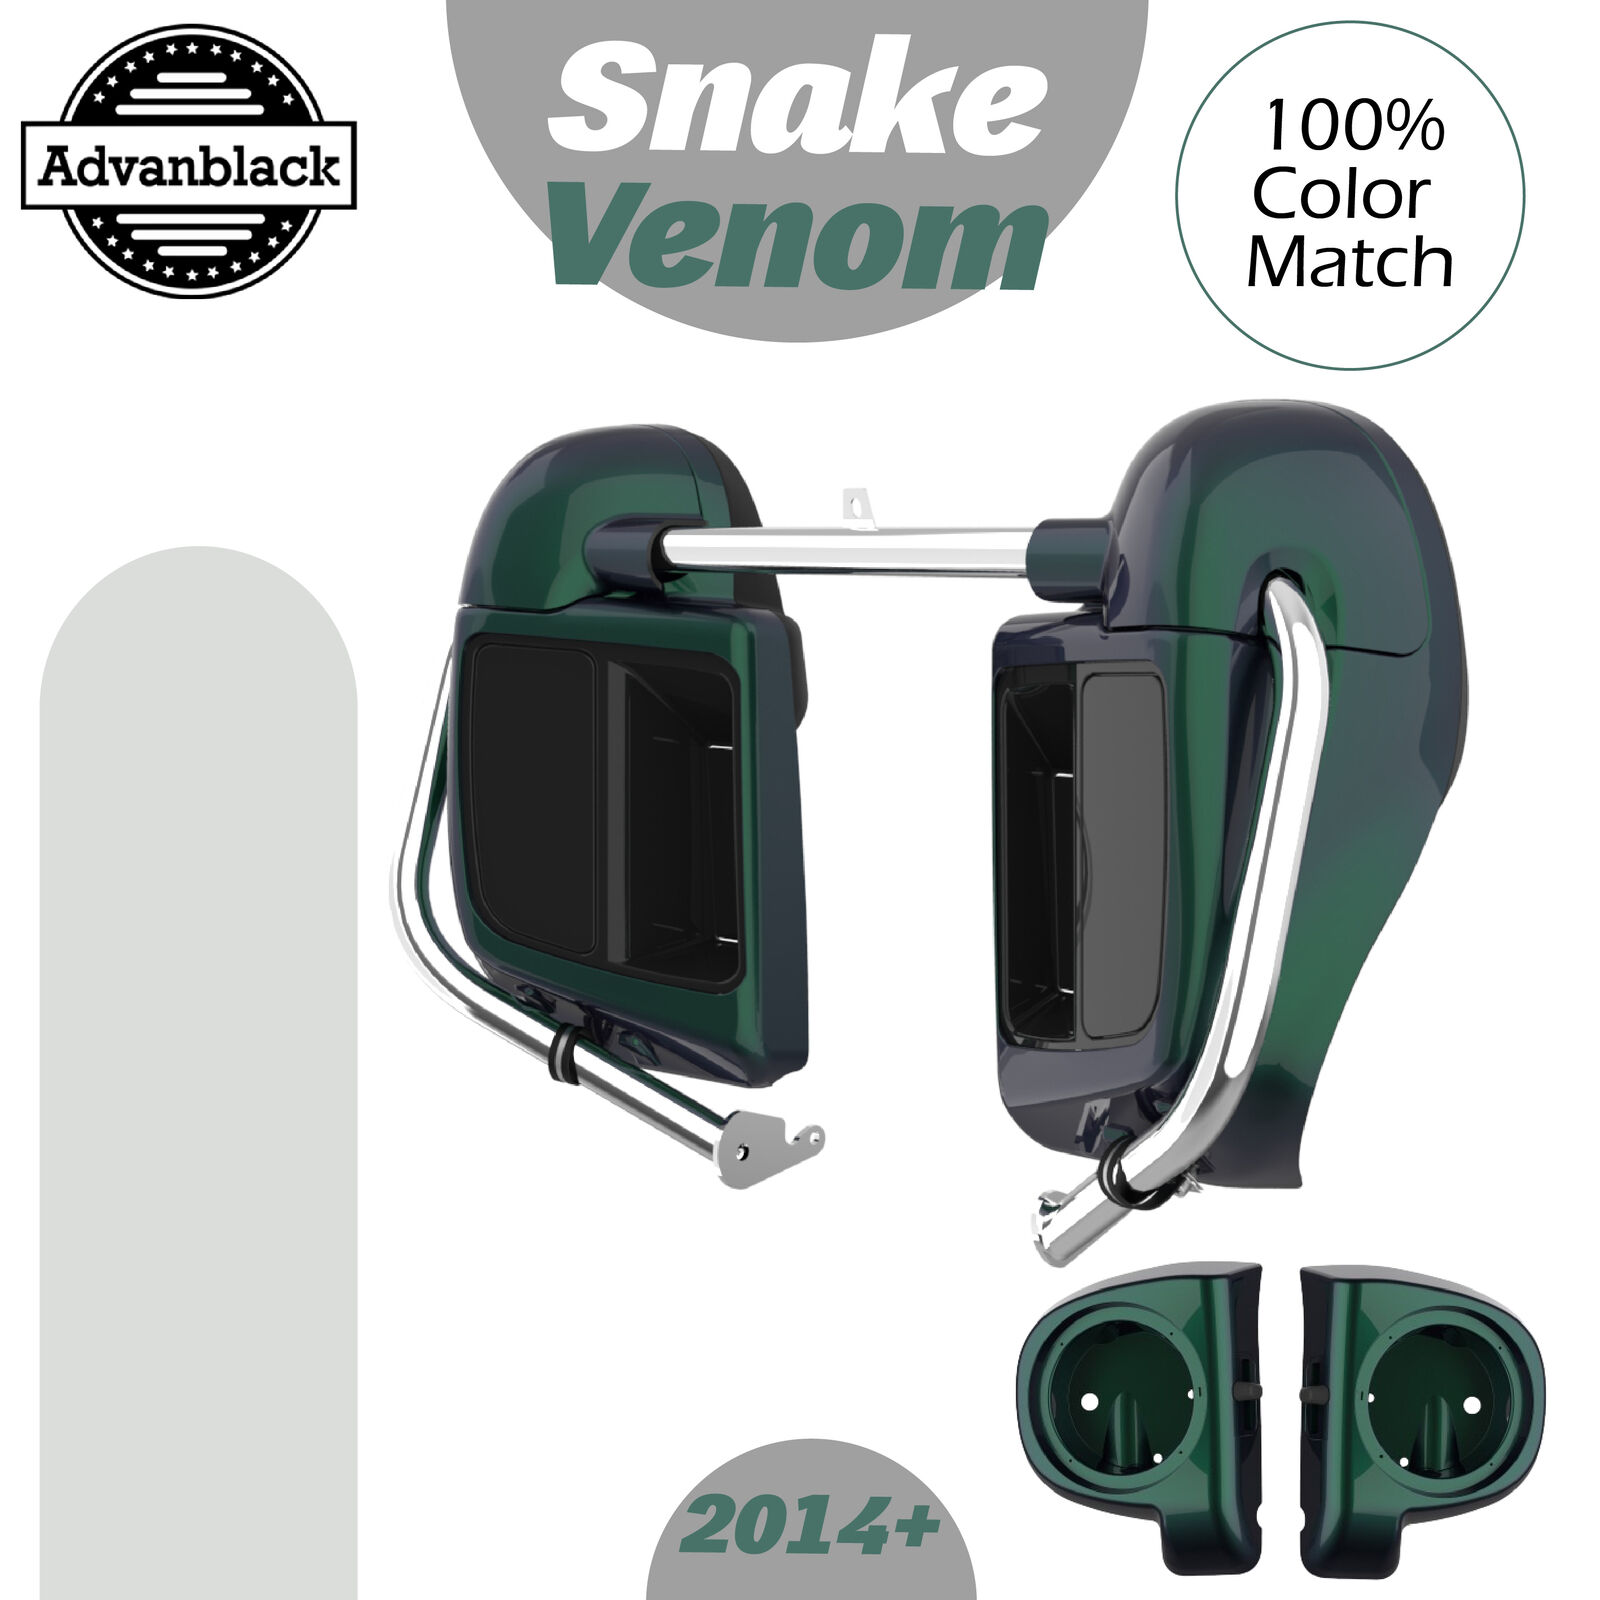 Advanblack Snake Venom Lower Vented Fairing 6.5'' Speaker Pod For 2014+ Harley